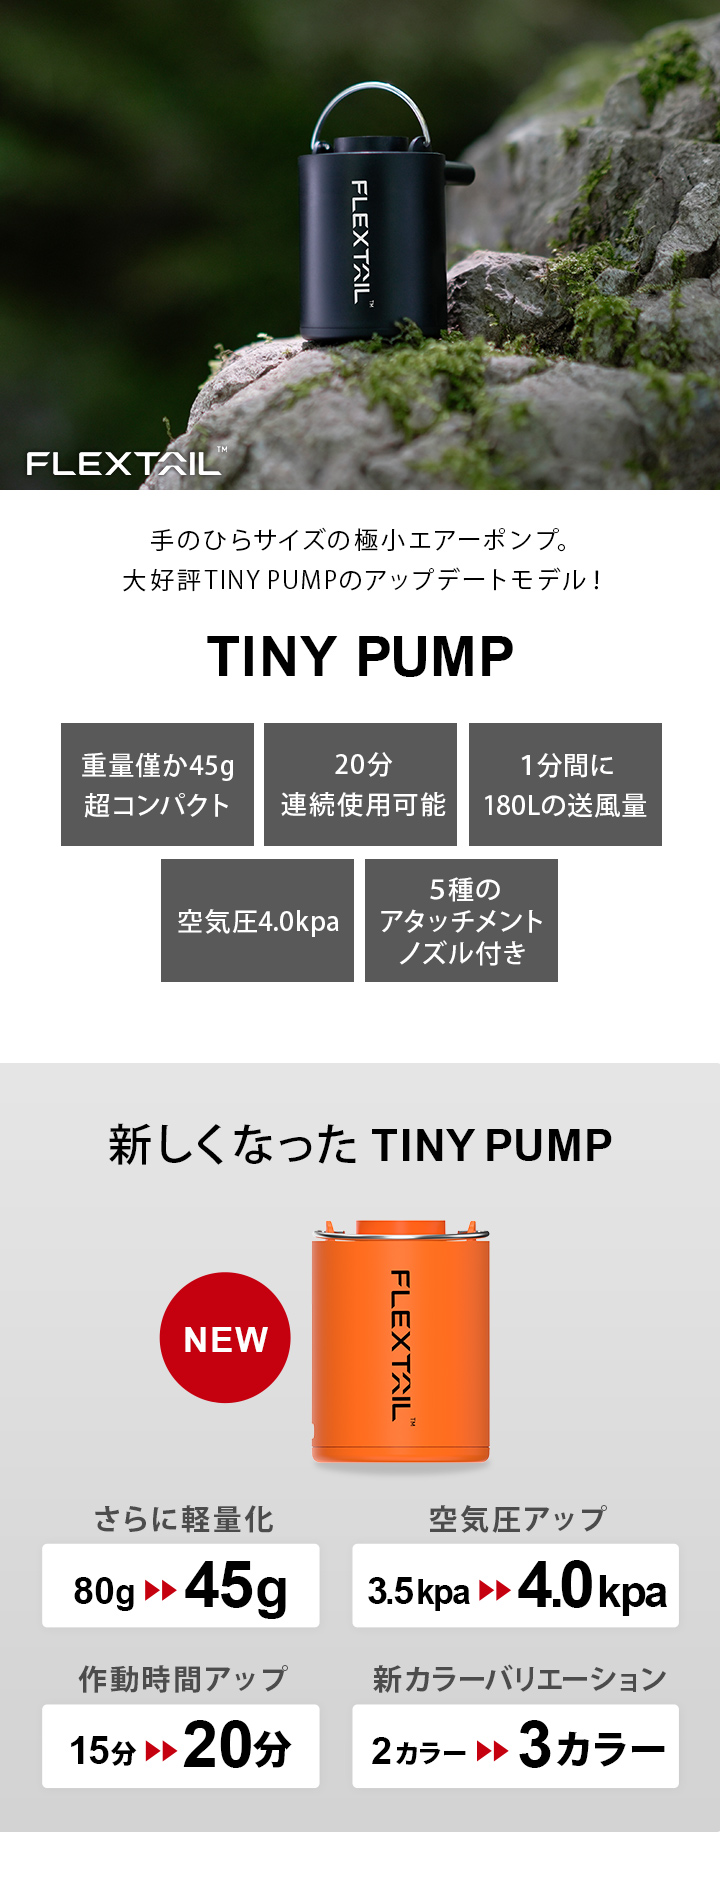 フレックステイルギア FLEXTAILGEAR エアーポンプ タイニーポンプ Tiny Pump